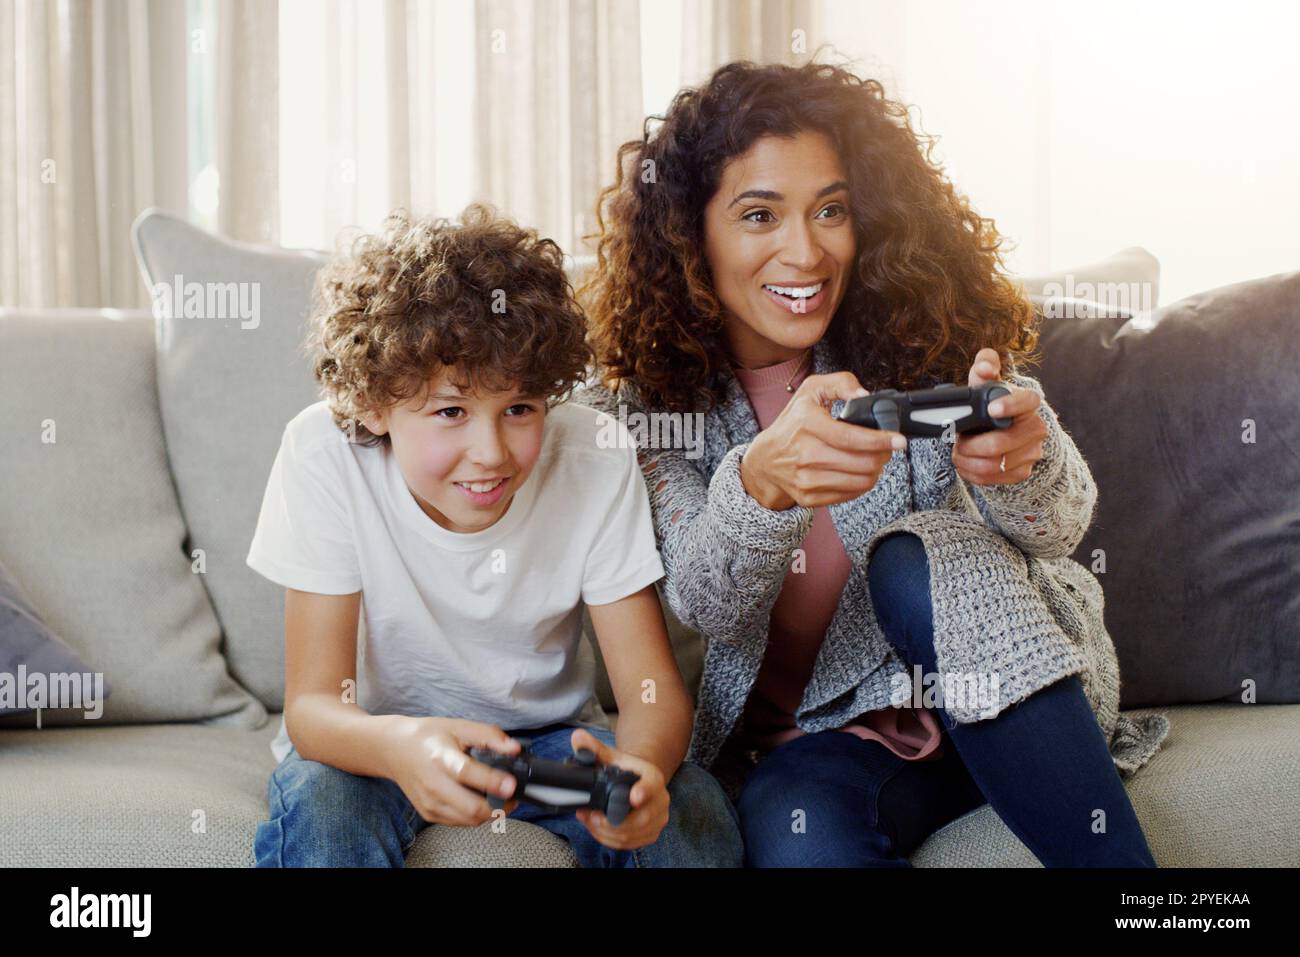 Heute ist Spieltag mit meinem kleinen Champion. Eine junge Mutter und ihr Sohn spielen zu Hause Videospiele. Stockfoto